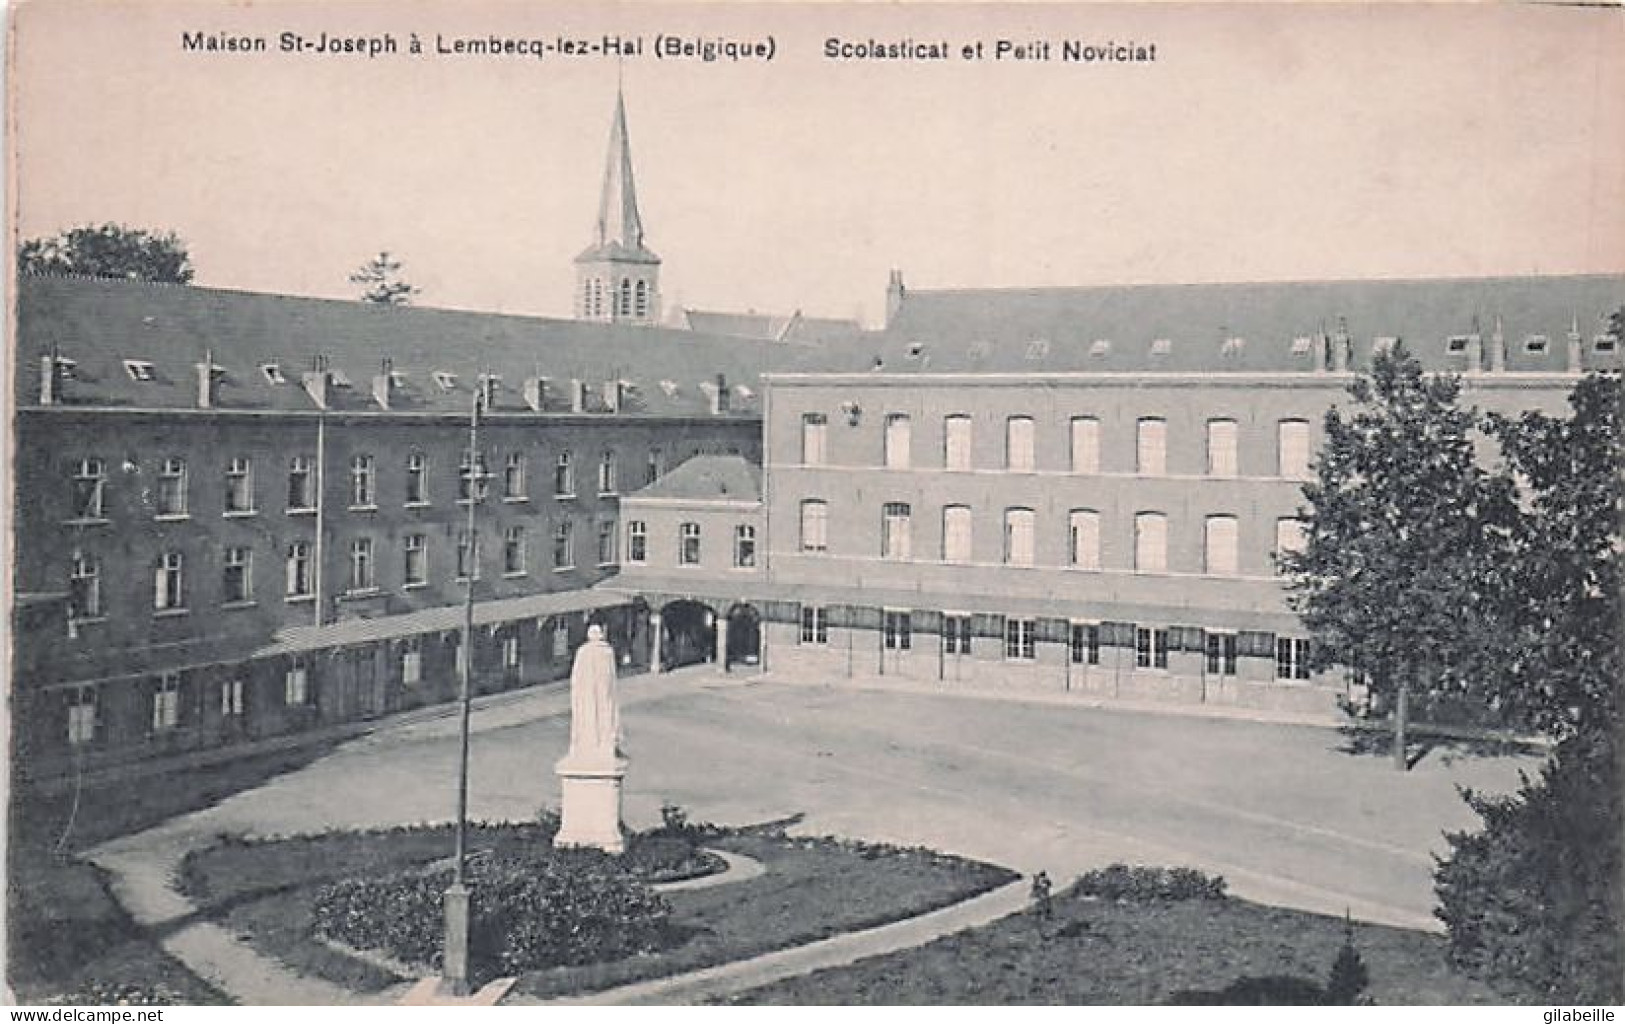 LEMBECQ - LEMBEEK - Maison St Joseph - Scolasticat Et Petit Noviciat - Halle